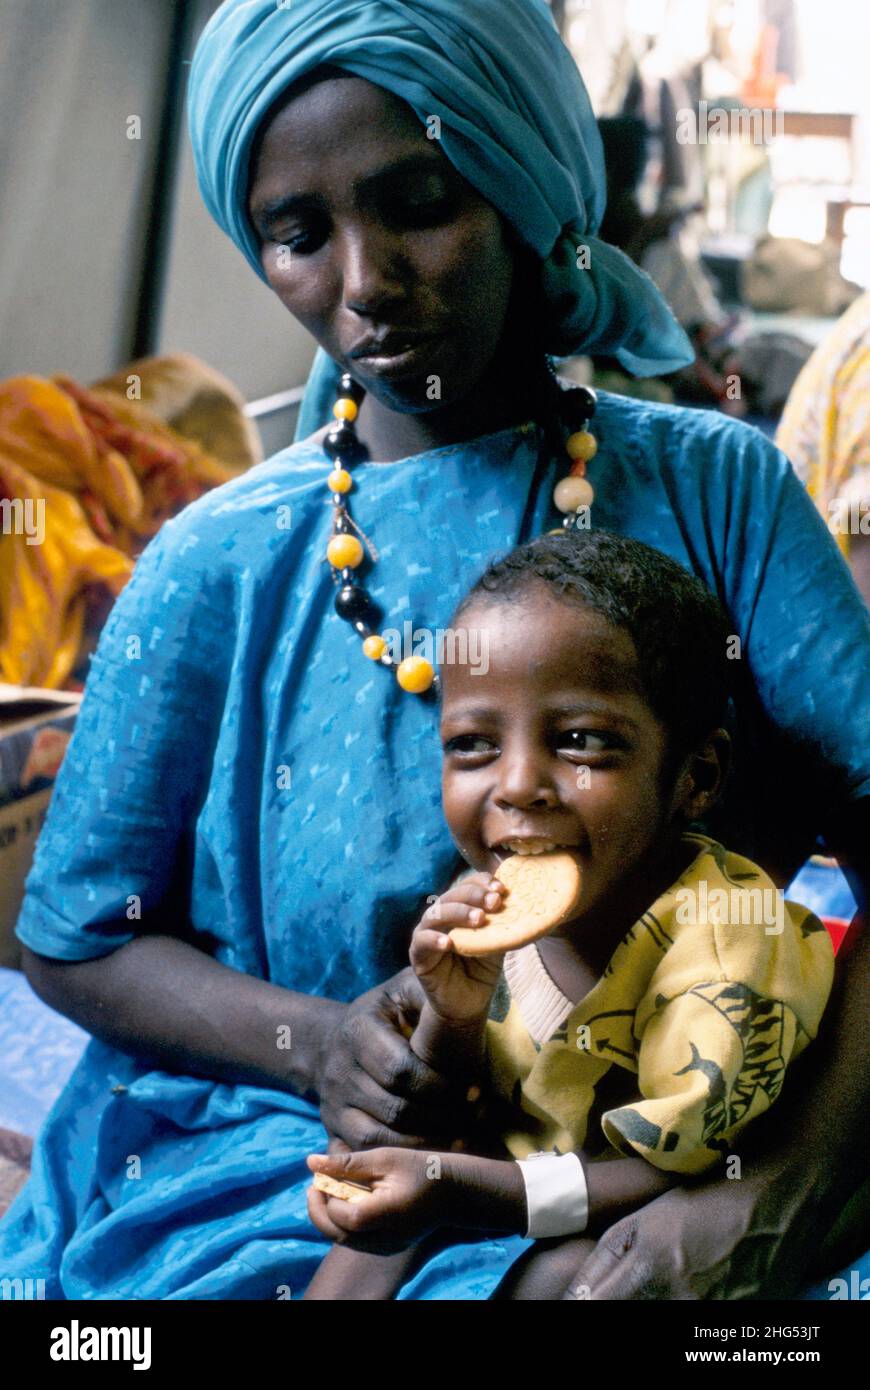 Une femme somalienne avec un enfant mangeant un biscuit riche en protéines dans un centre d'alimentation d'urgence pour les réfugiés déplacés par la guerre et la famine.Kebrebeyah, Éthiopie. Banque D'Images